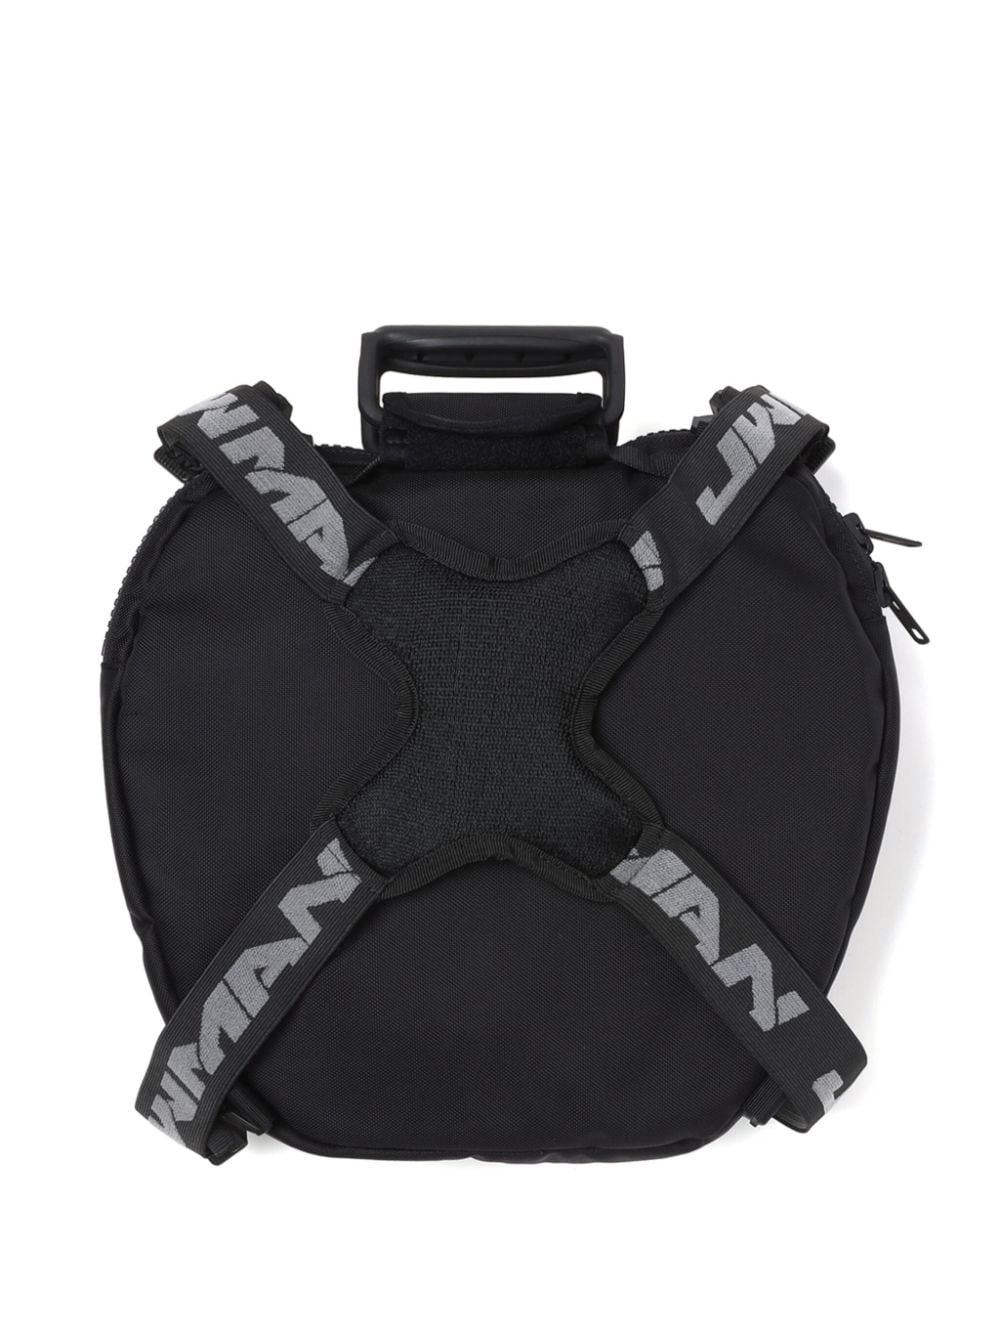 x Innerraum utility backpack - 3